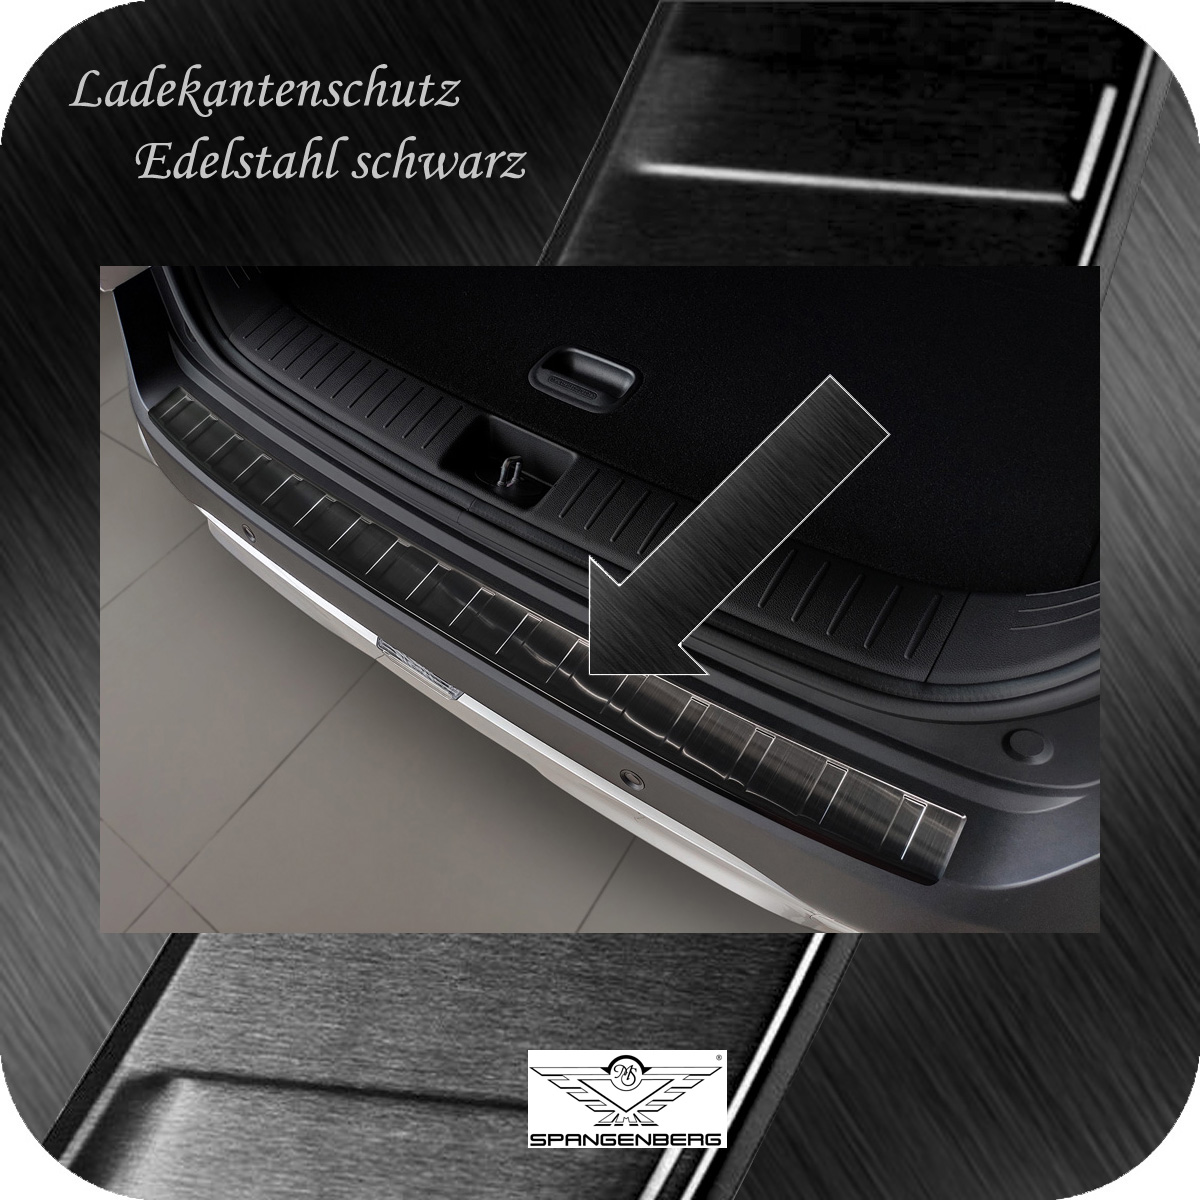 Ladekantenschutz Edelstahl schwarz für Kia Sportage V Typ NQ5 ab 1.2022- 3245278